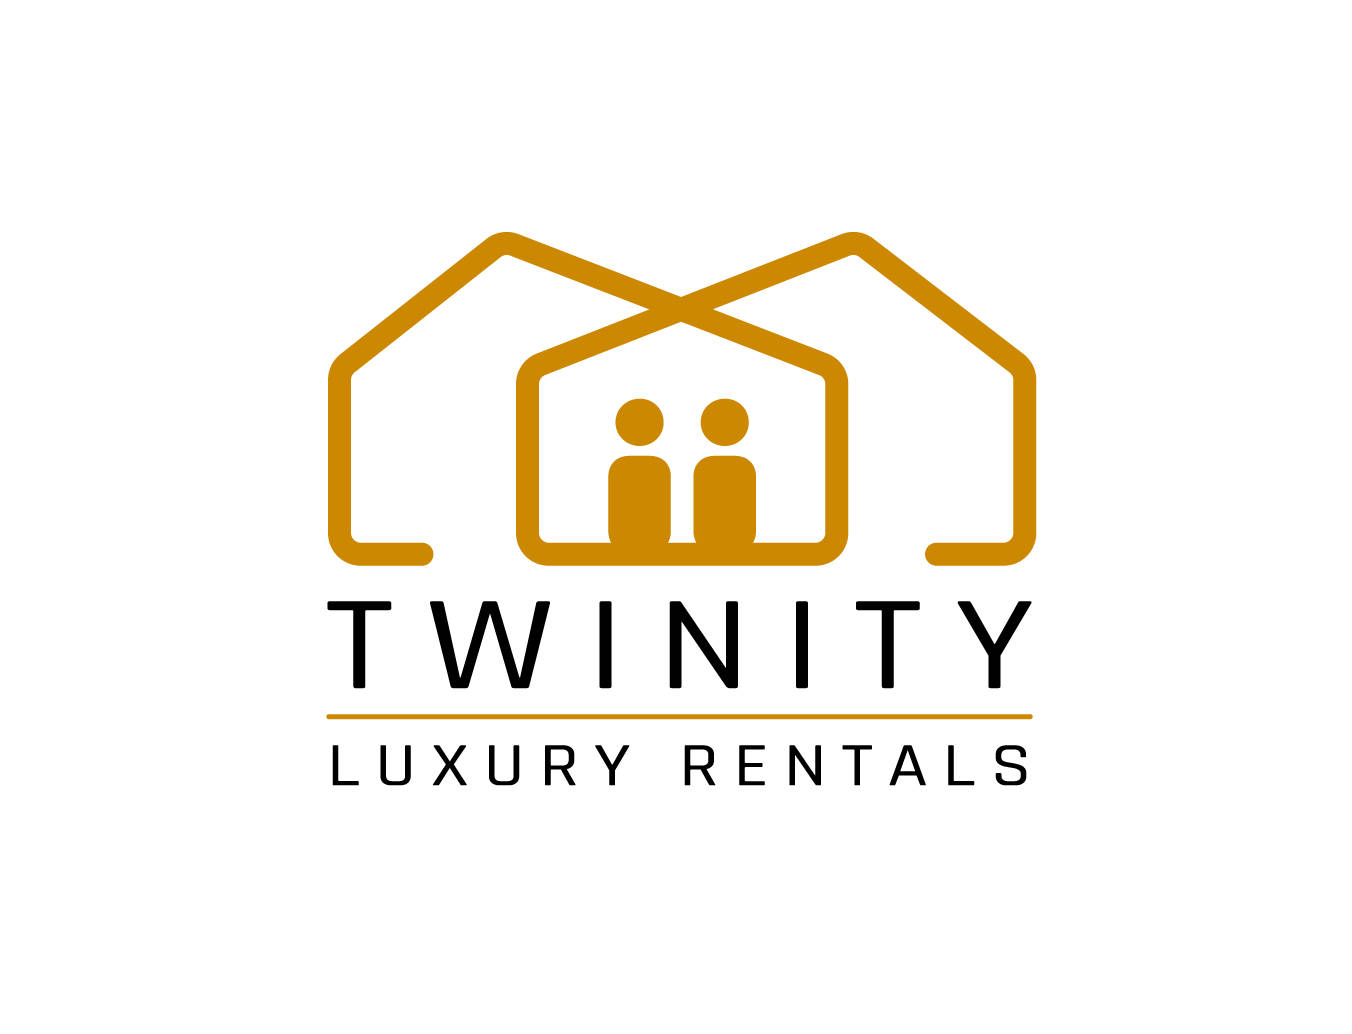 Twinity Luxury Rentals